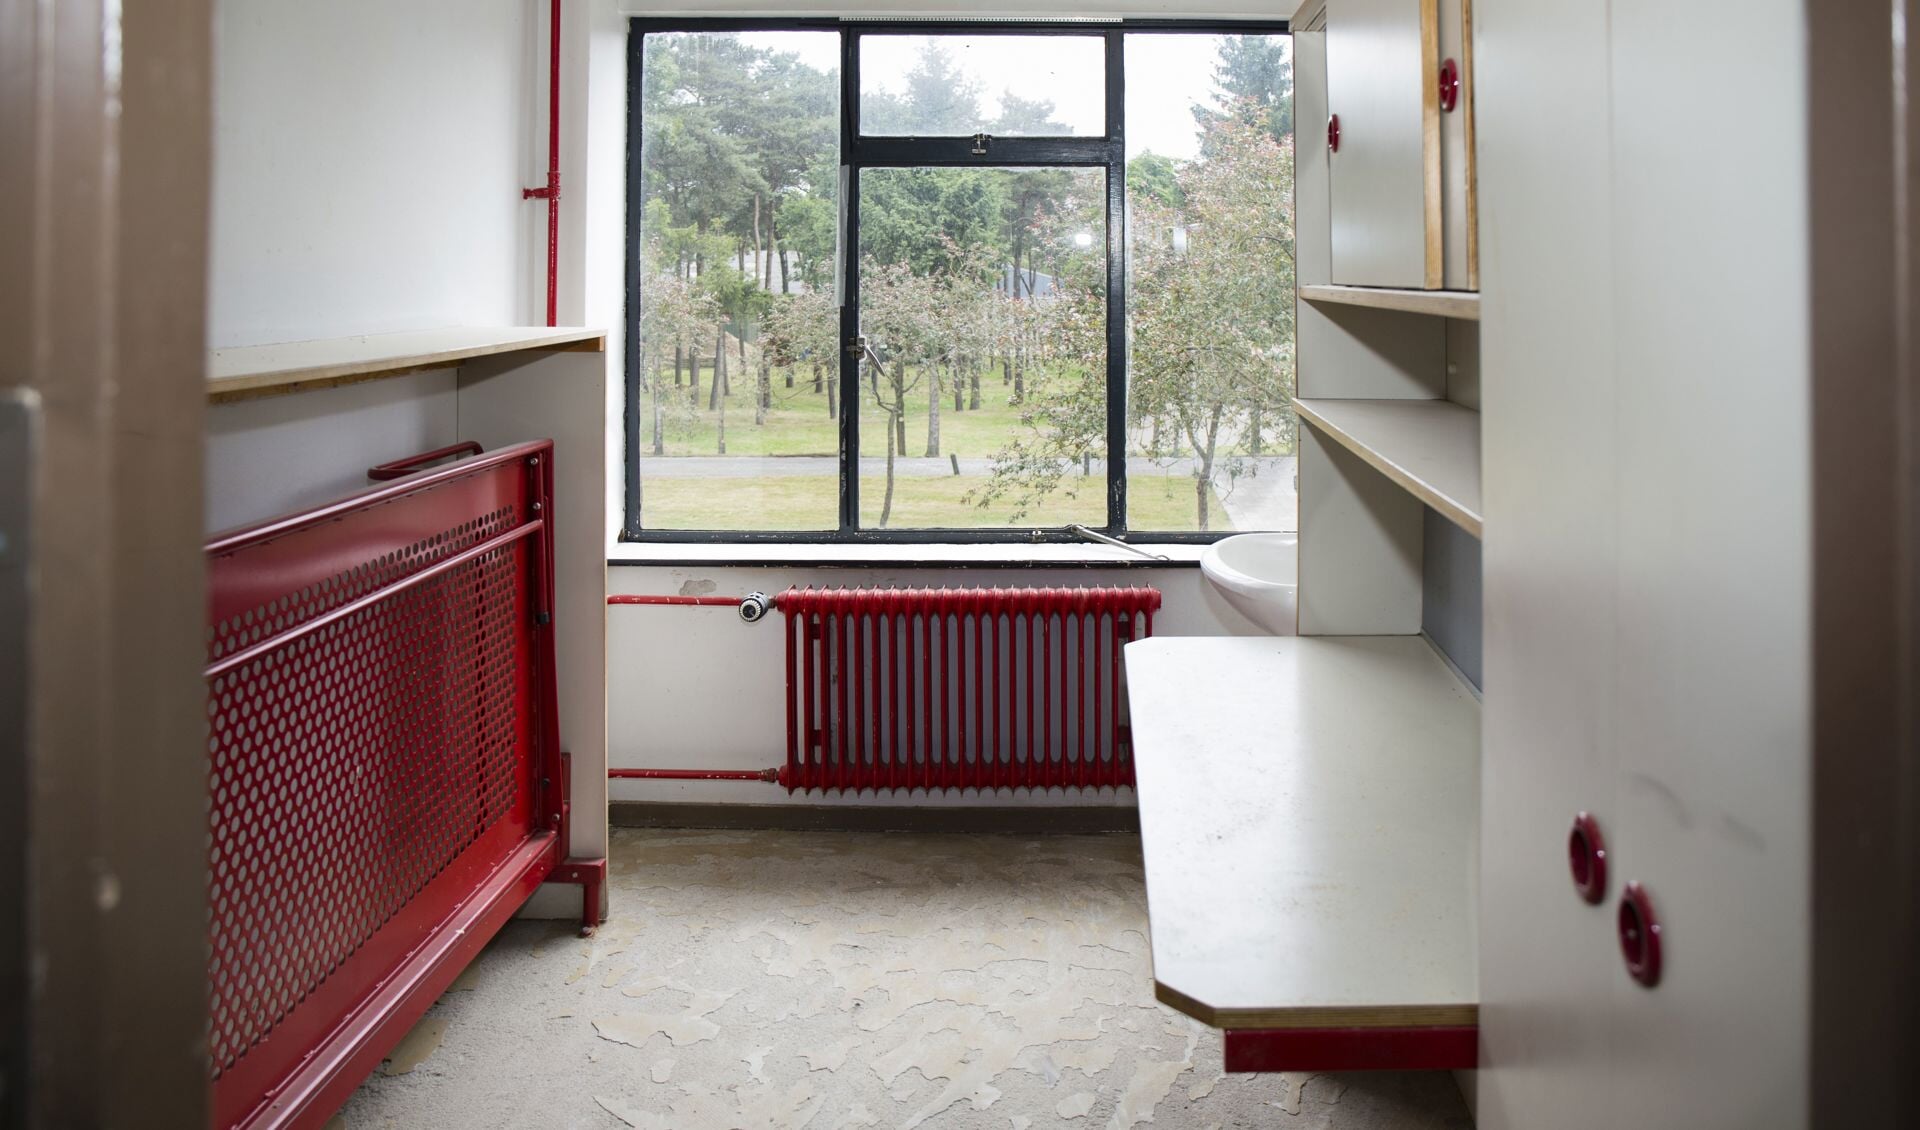 Het asielzoekerscentrum in Overloon draait 'kostenneutraal'. (foto: Albert Hendriks)